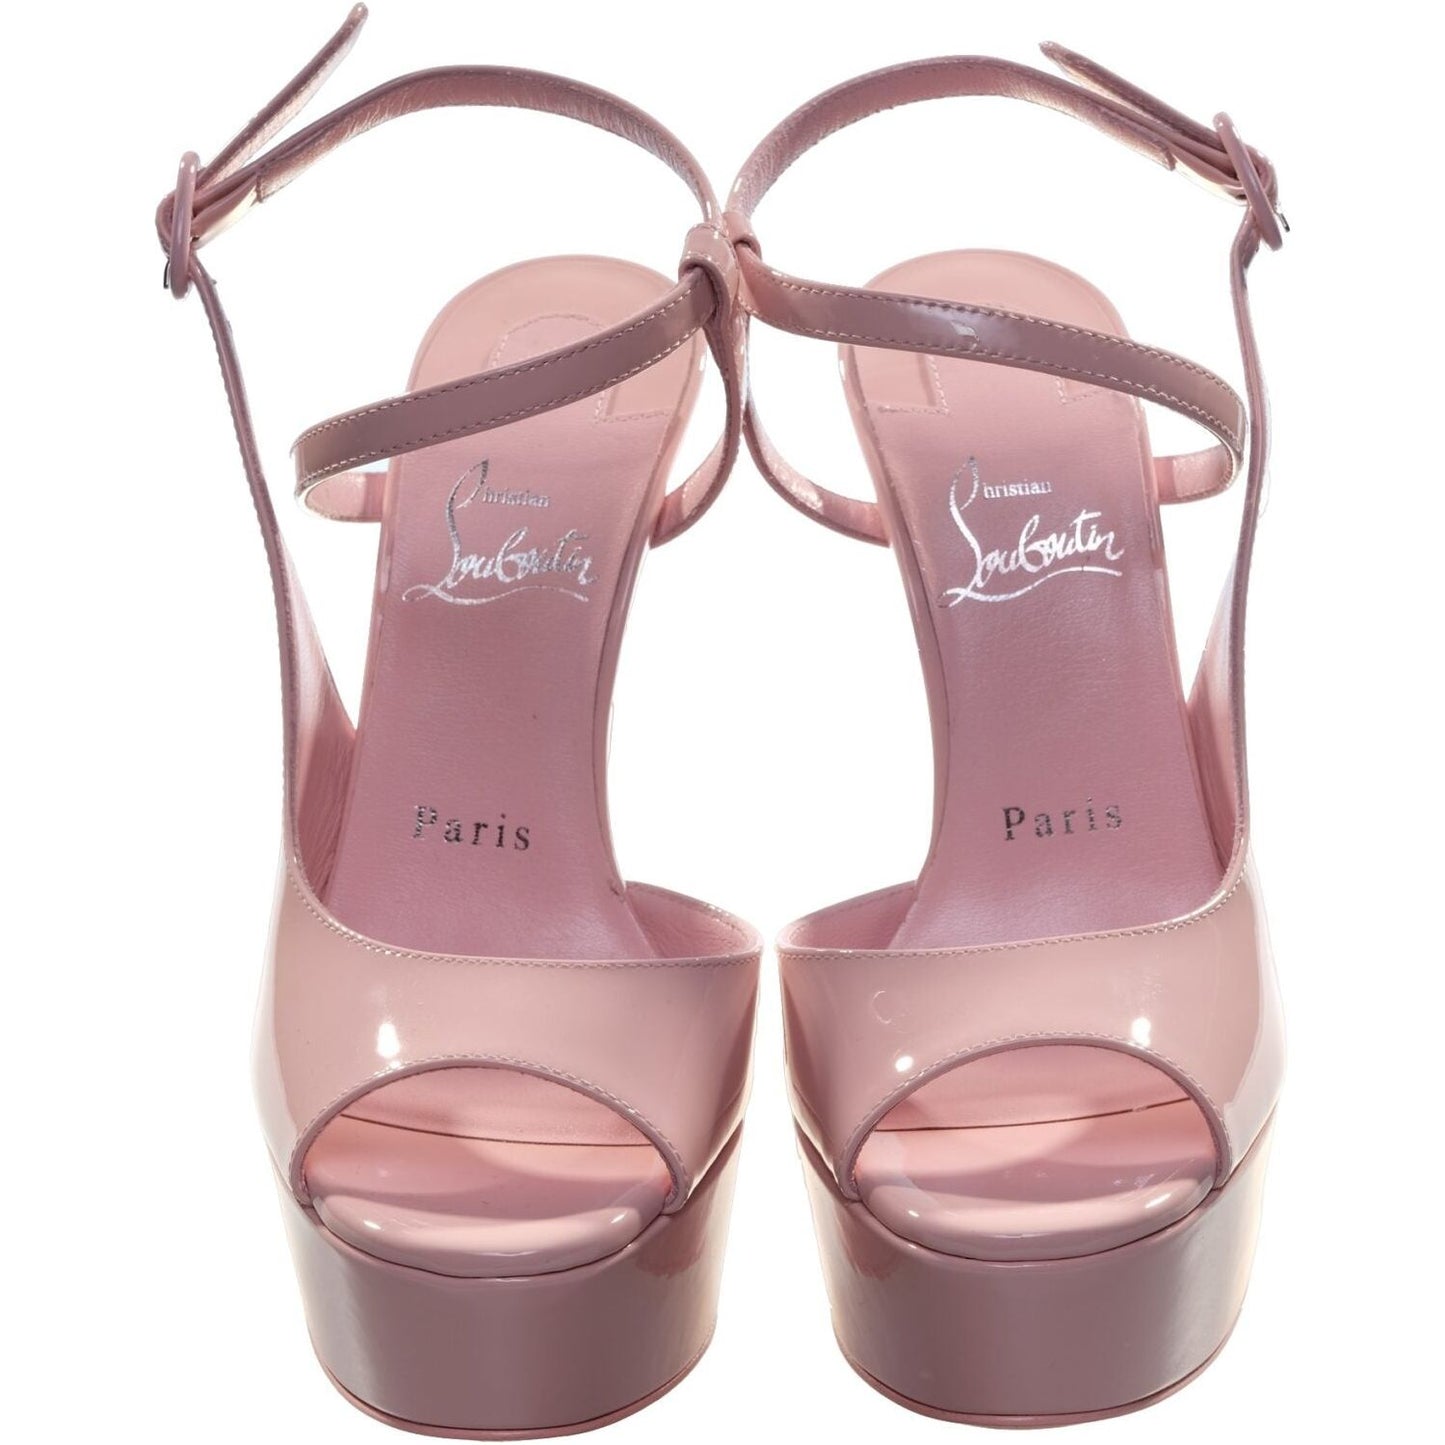 Jen Love Alta Baby Pink High Heels